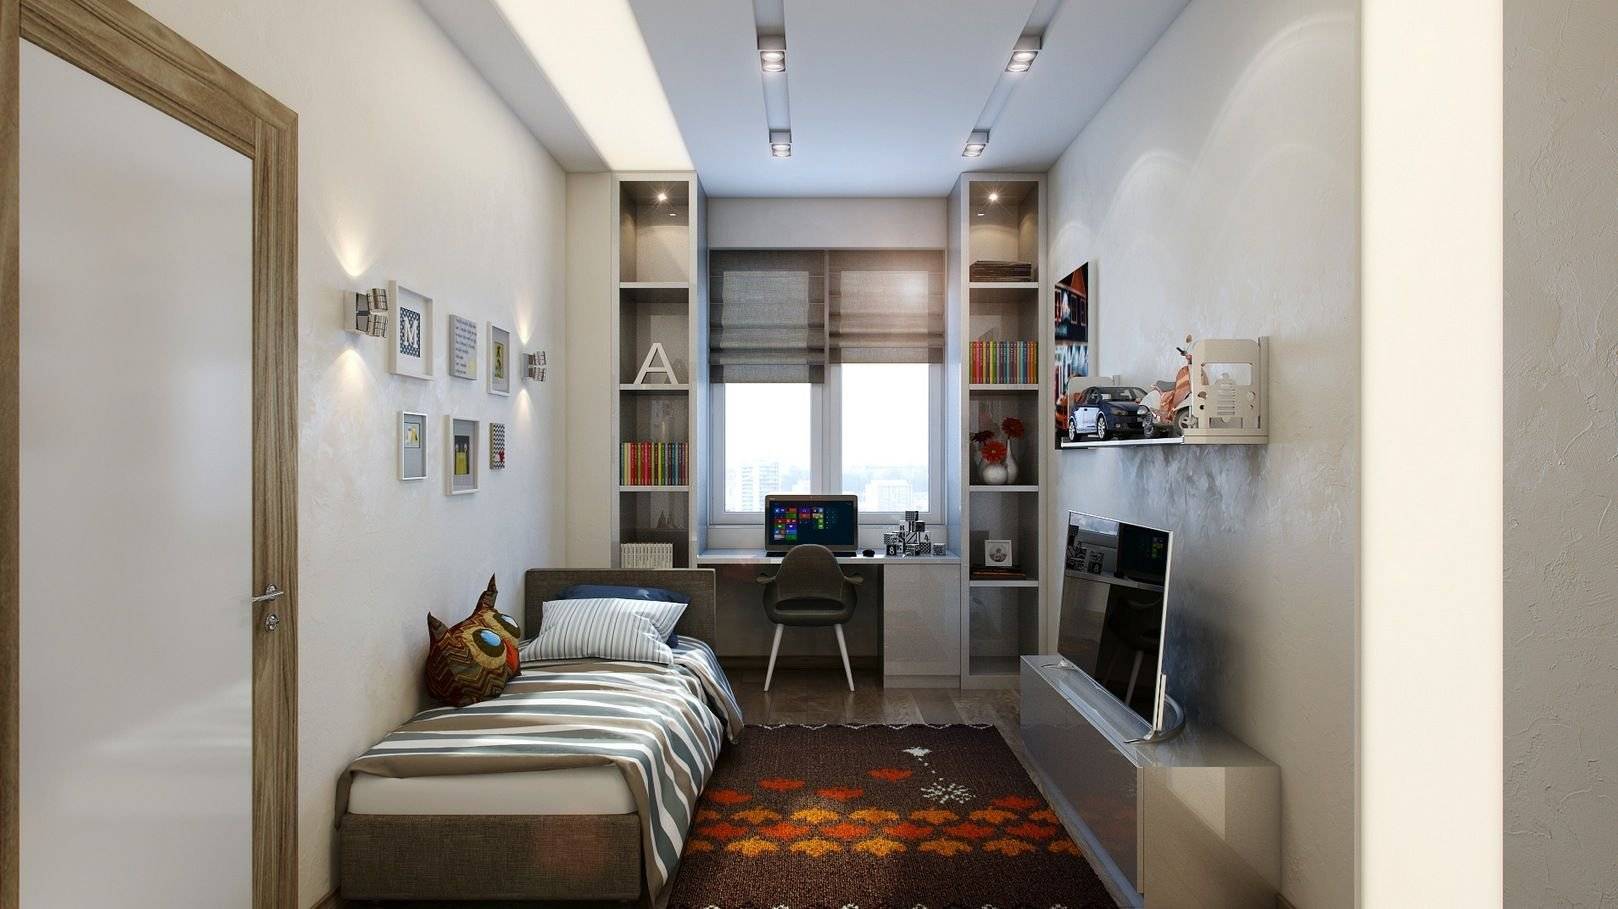 Дизайн интерьера маленькой спальни 10 кв м: фото, советы